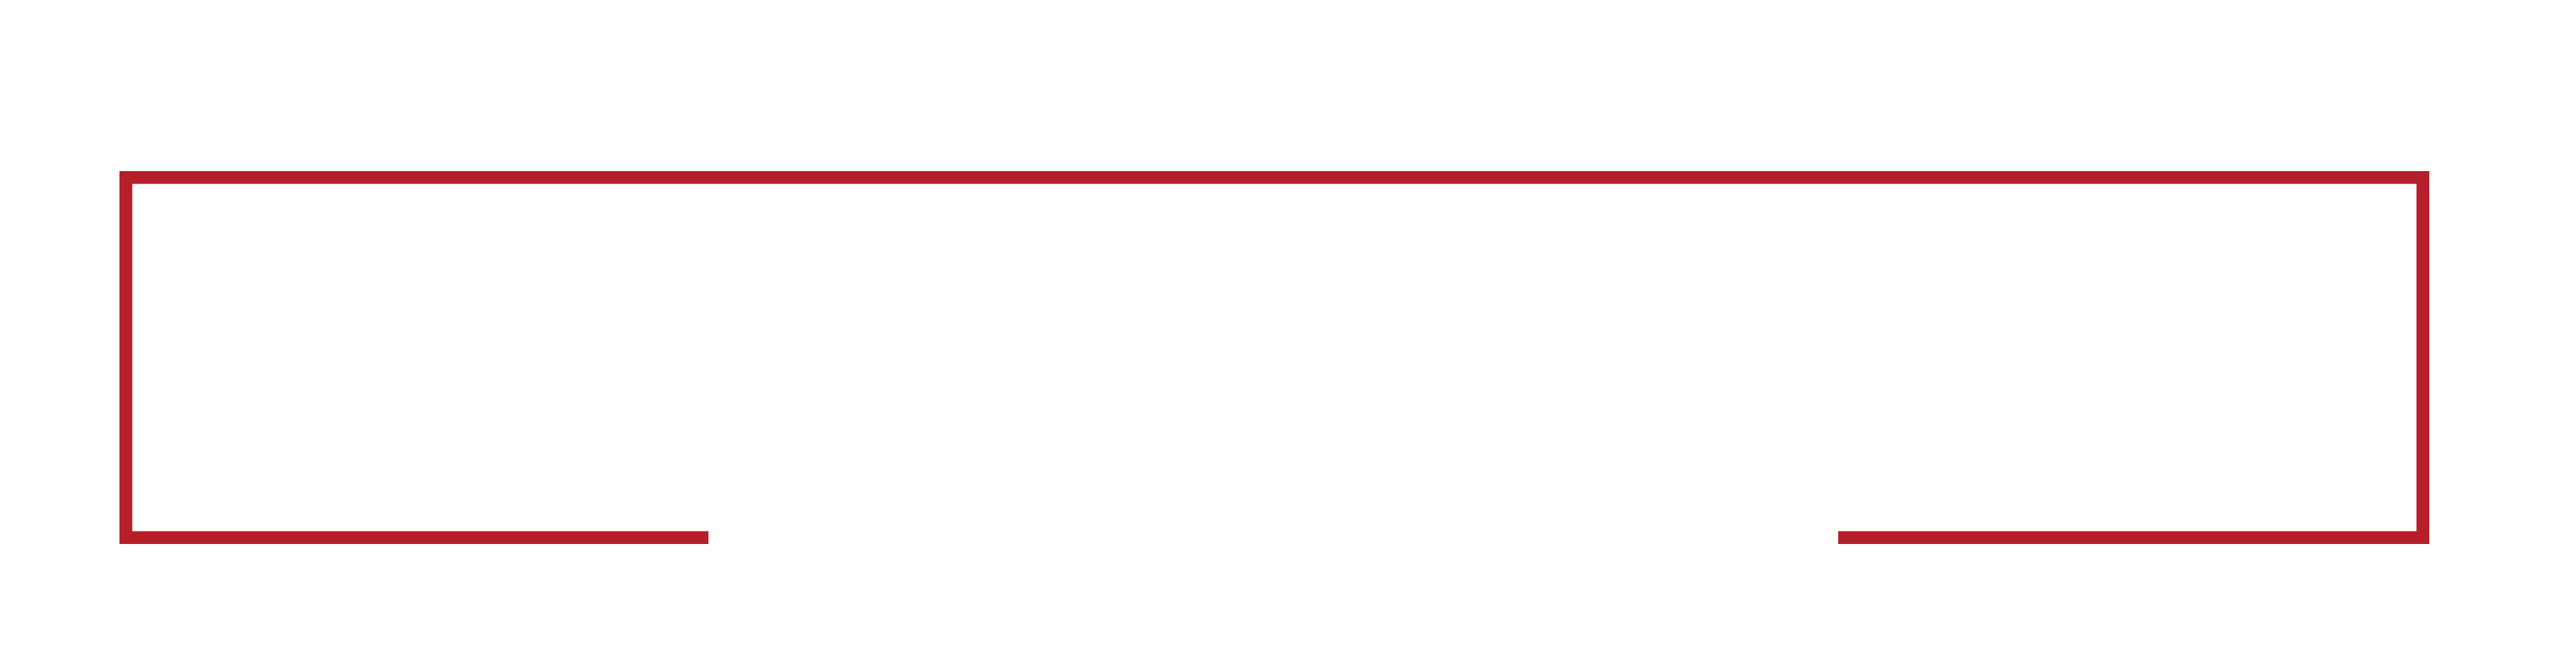 Immobilien Vermietung-Verkauf | Verwaltung - Immobilienmakler Chemnitz, Hausmeisterservice, Hausverwaltung und Wohn- und Gewerbeverwaltung